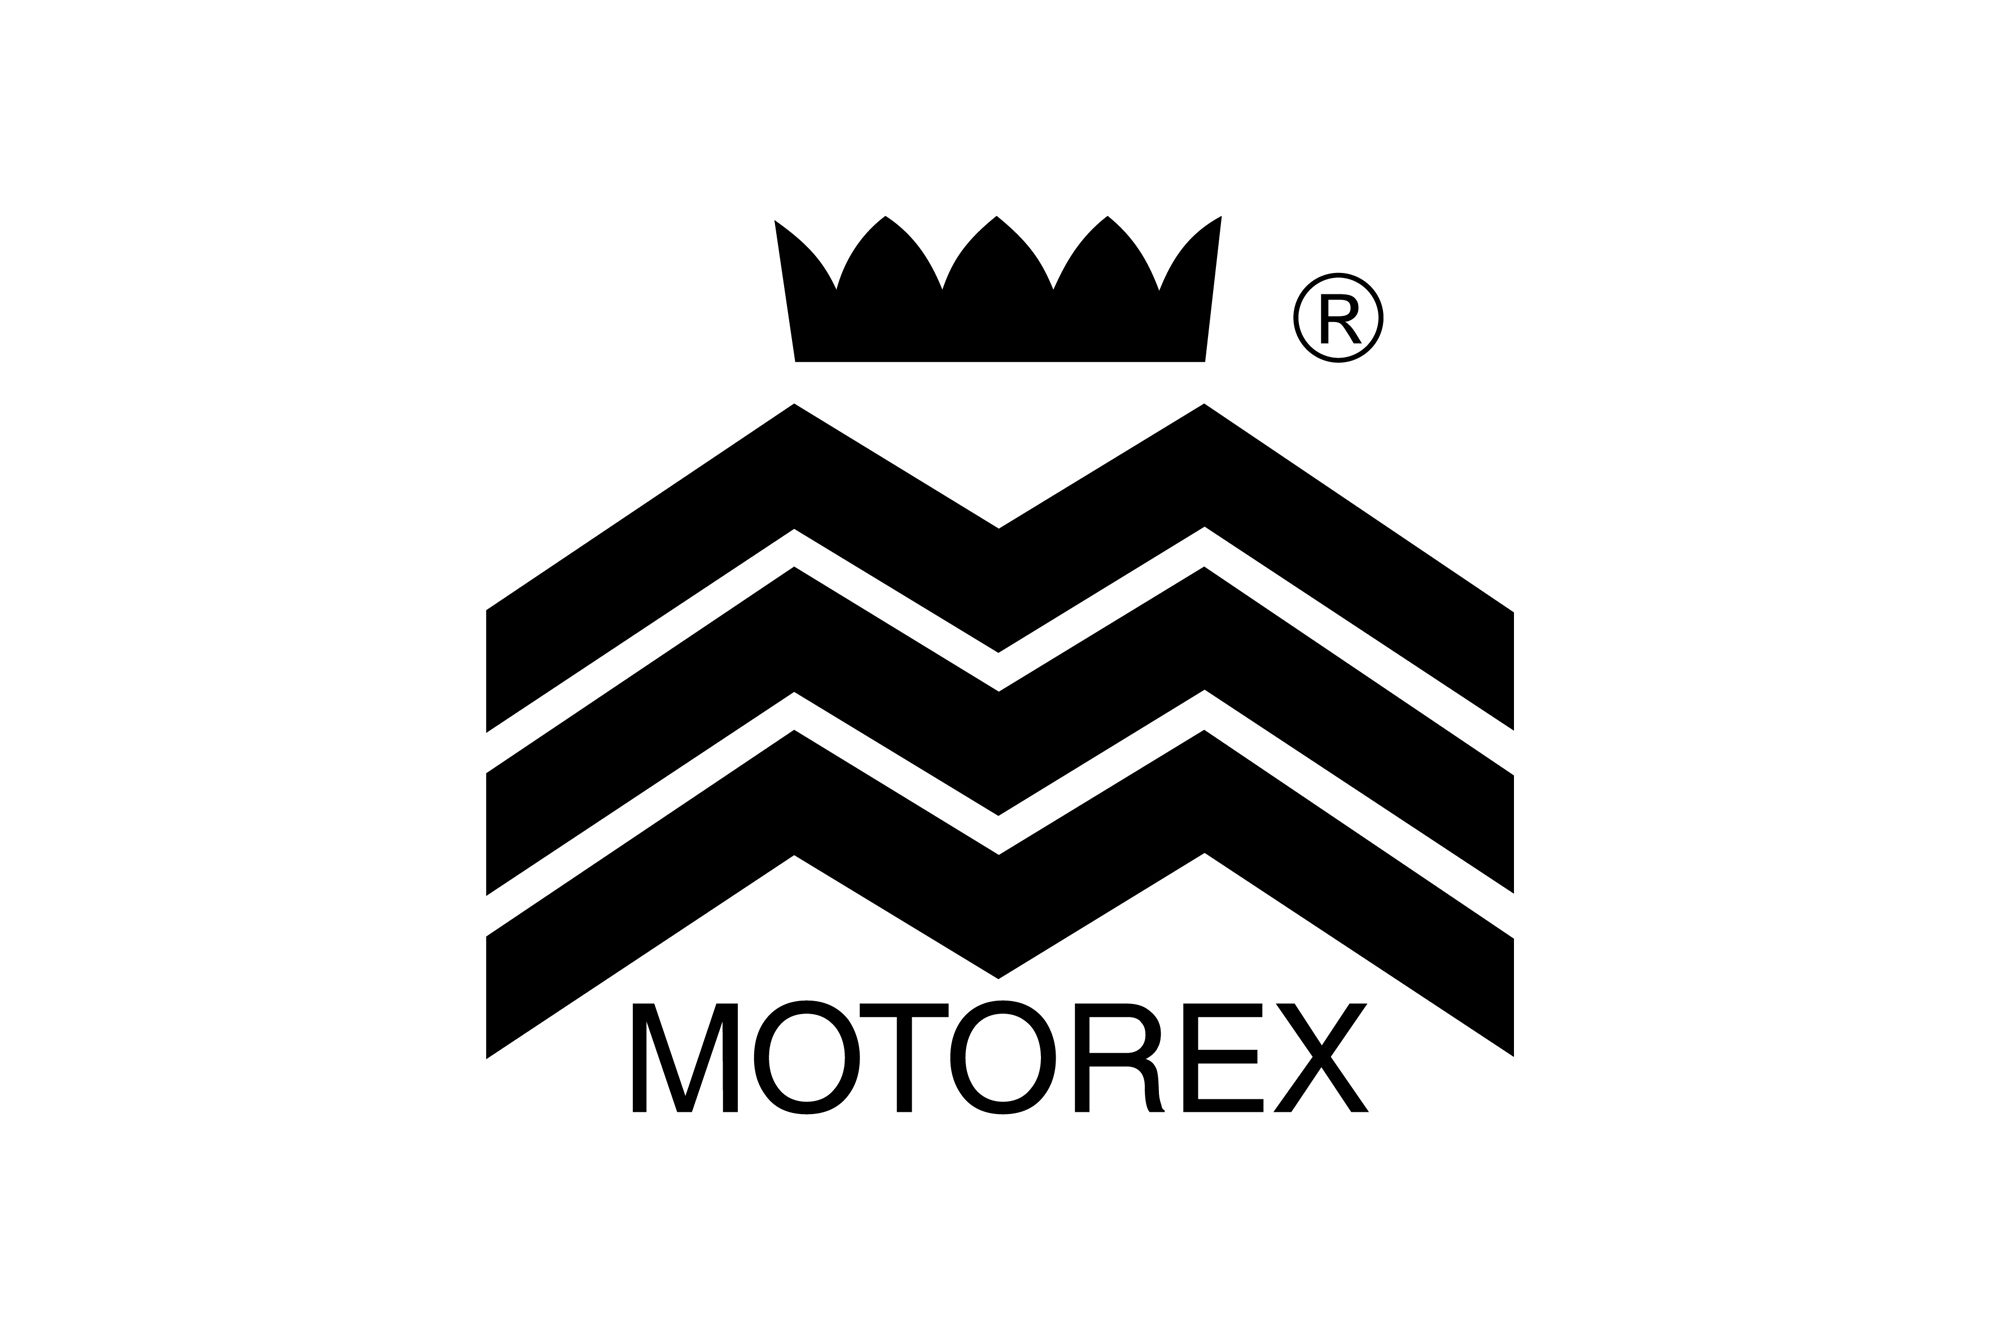 Motorex - logo PLANSZA 30x30cm EDYCJA